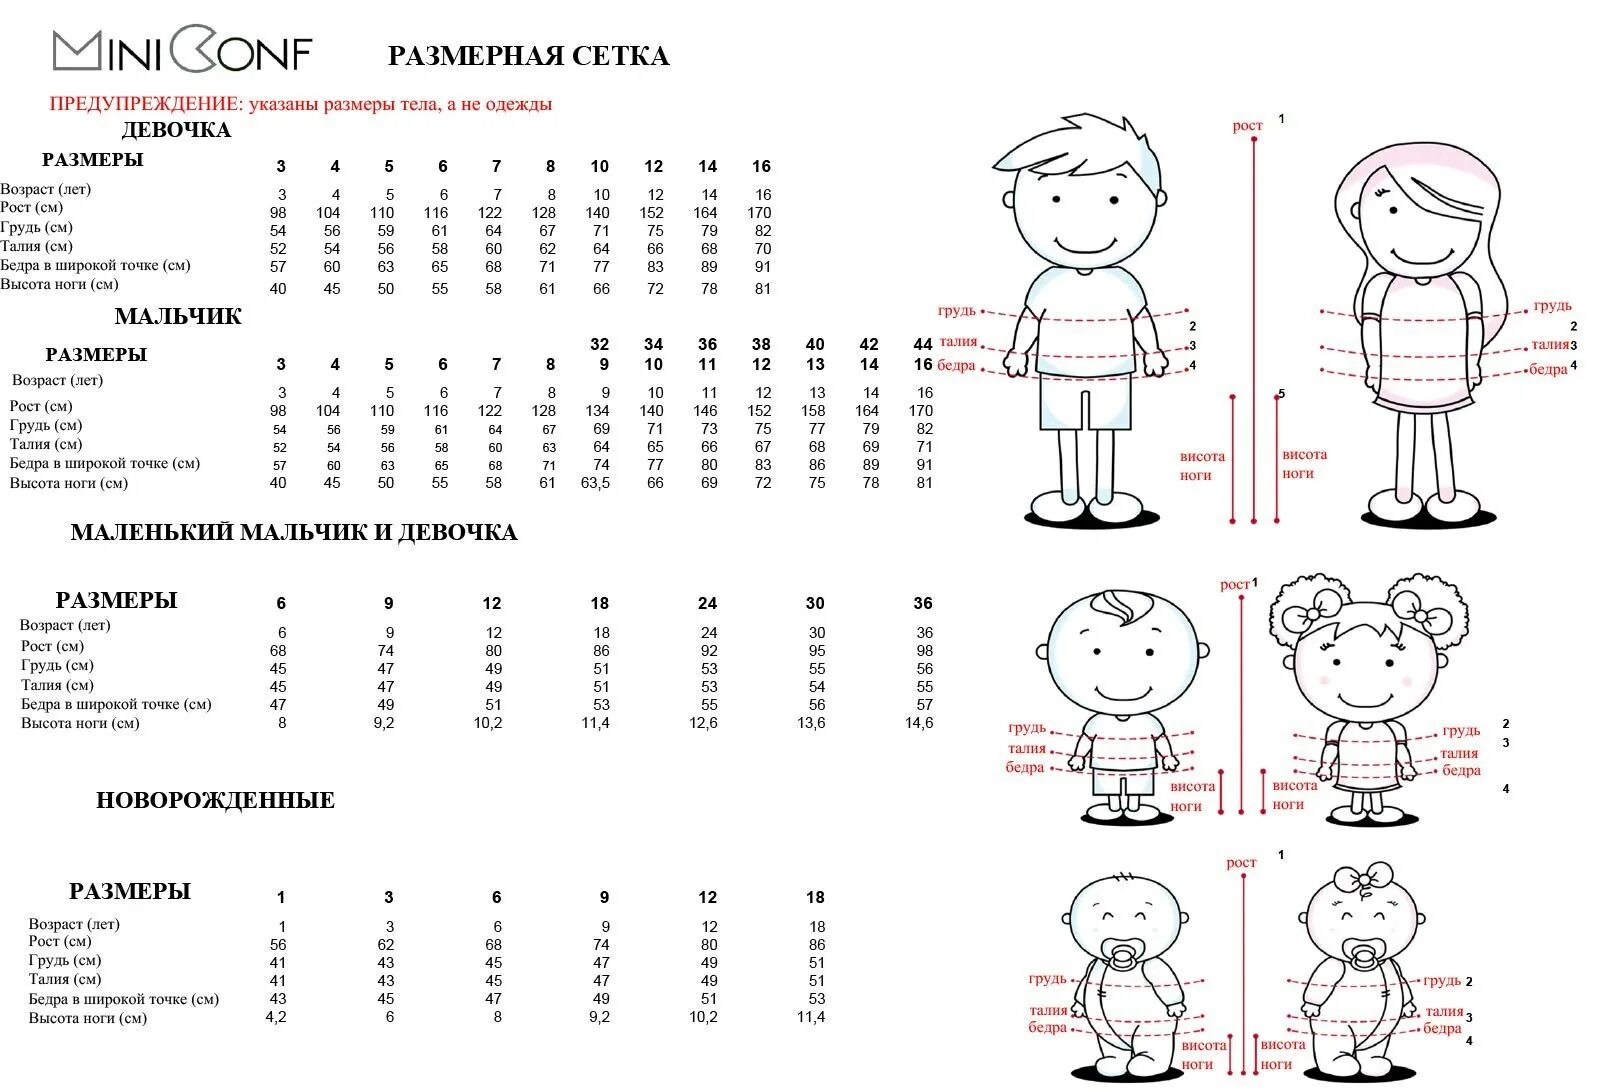 Размеры по возрасту ребенка до года. Размерная таблица детской одежды от 0 до 1 года. Размерная таблица для детей по возрасту/рост. Размерный ряд по возрасту ребенка до года. Размерная сетка до 1 года девочке.